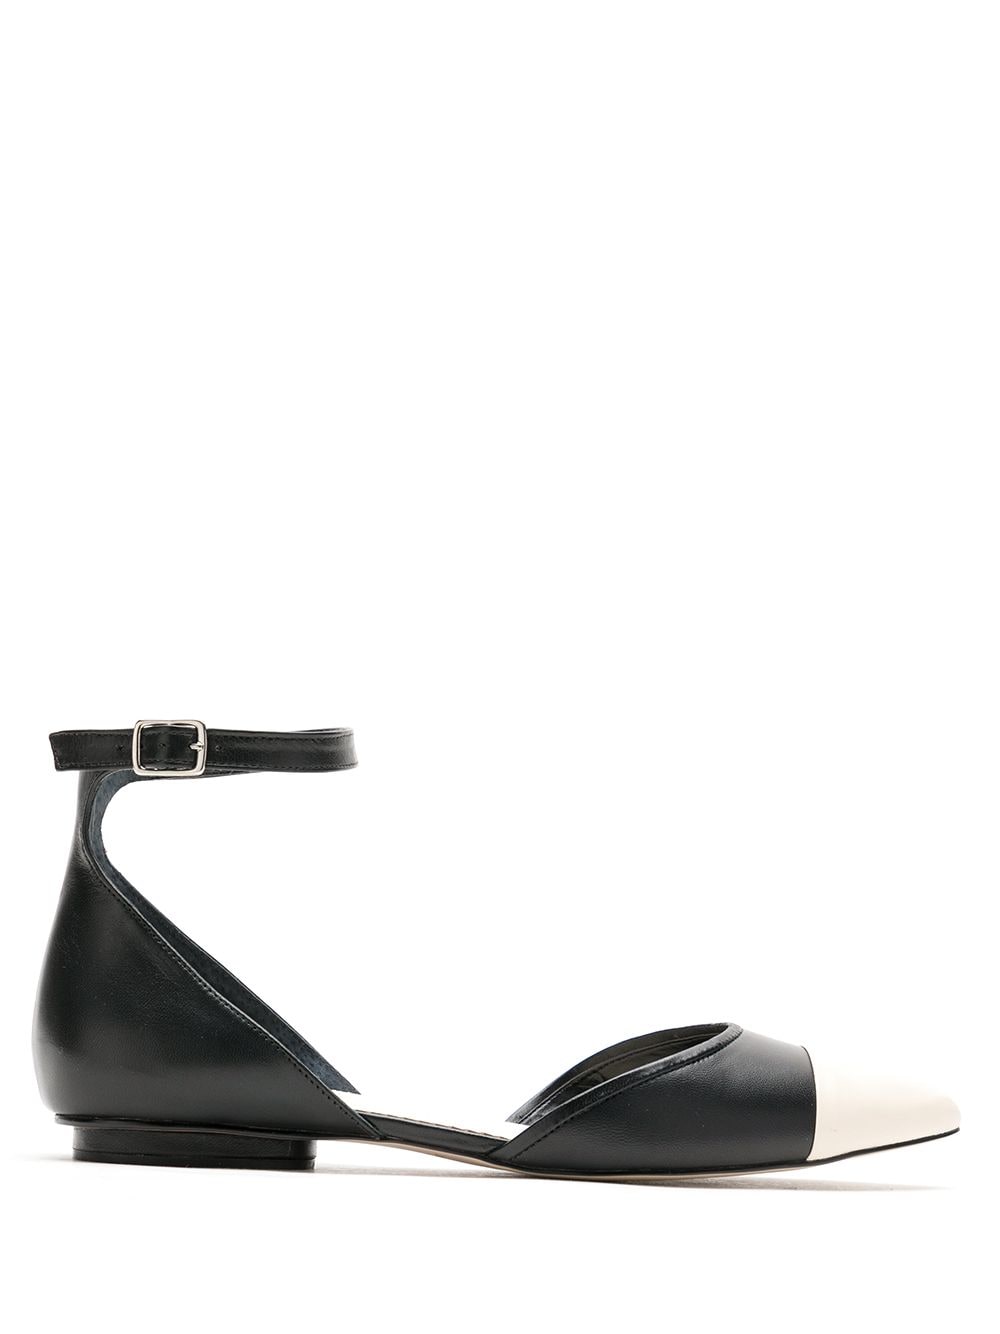 Sarah Chofakian Cisne flat leather sandals - Black von Sarah Chofakian